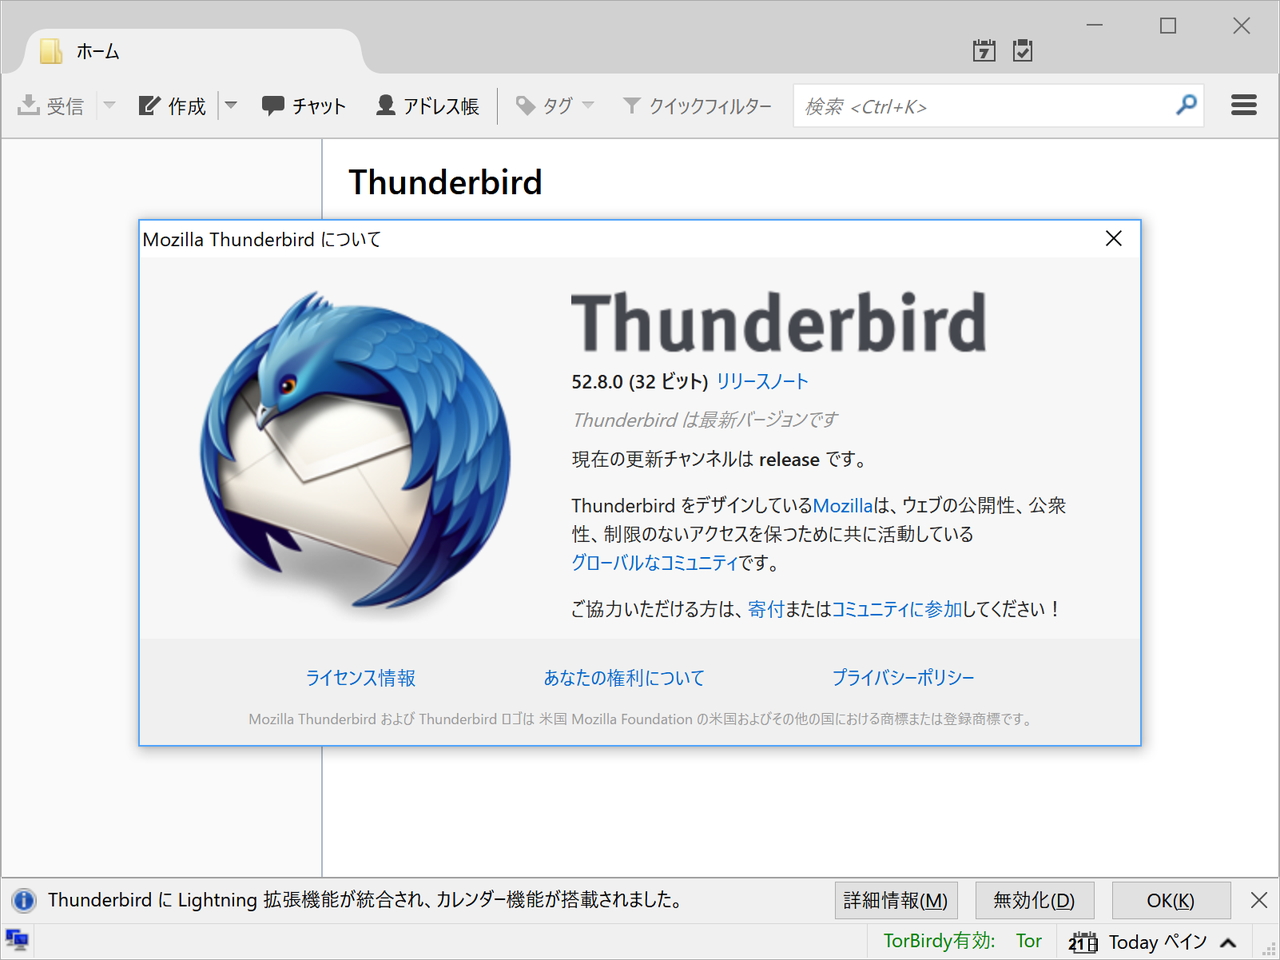 Mozilla Thunderbird. Mozilla Thunderbird темы. Mozilla Foundation. Mozilla Thunderbird and Lightning. Thunderbird перевод